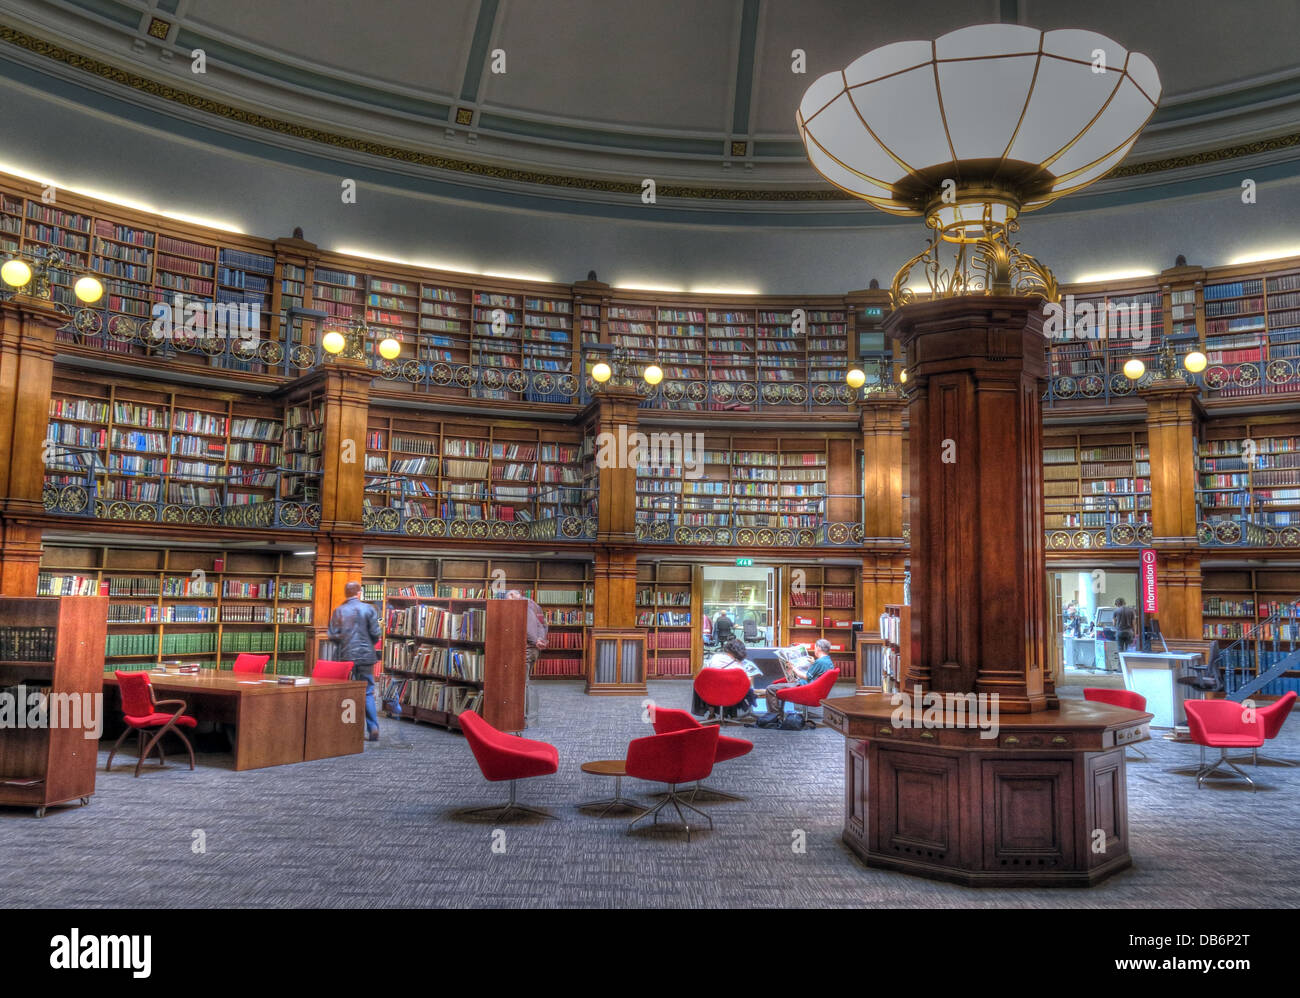 Bibliothèque centrale de Liverpool, l'intérieur de la salle de lecture Picton , Merseyside England UK Banque D'Images